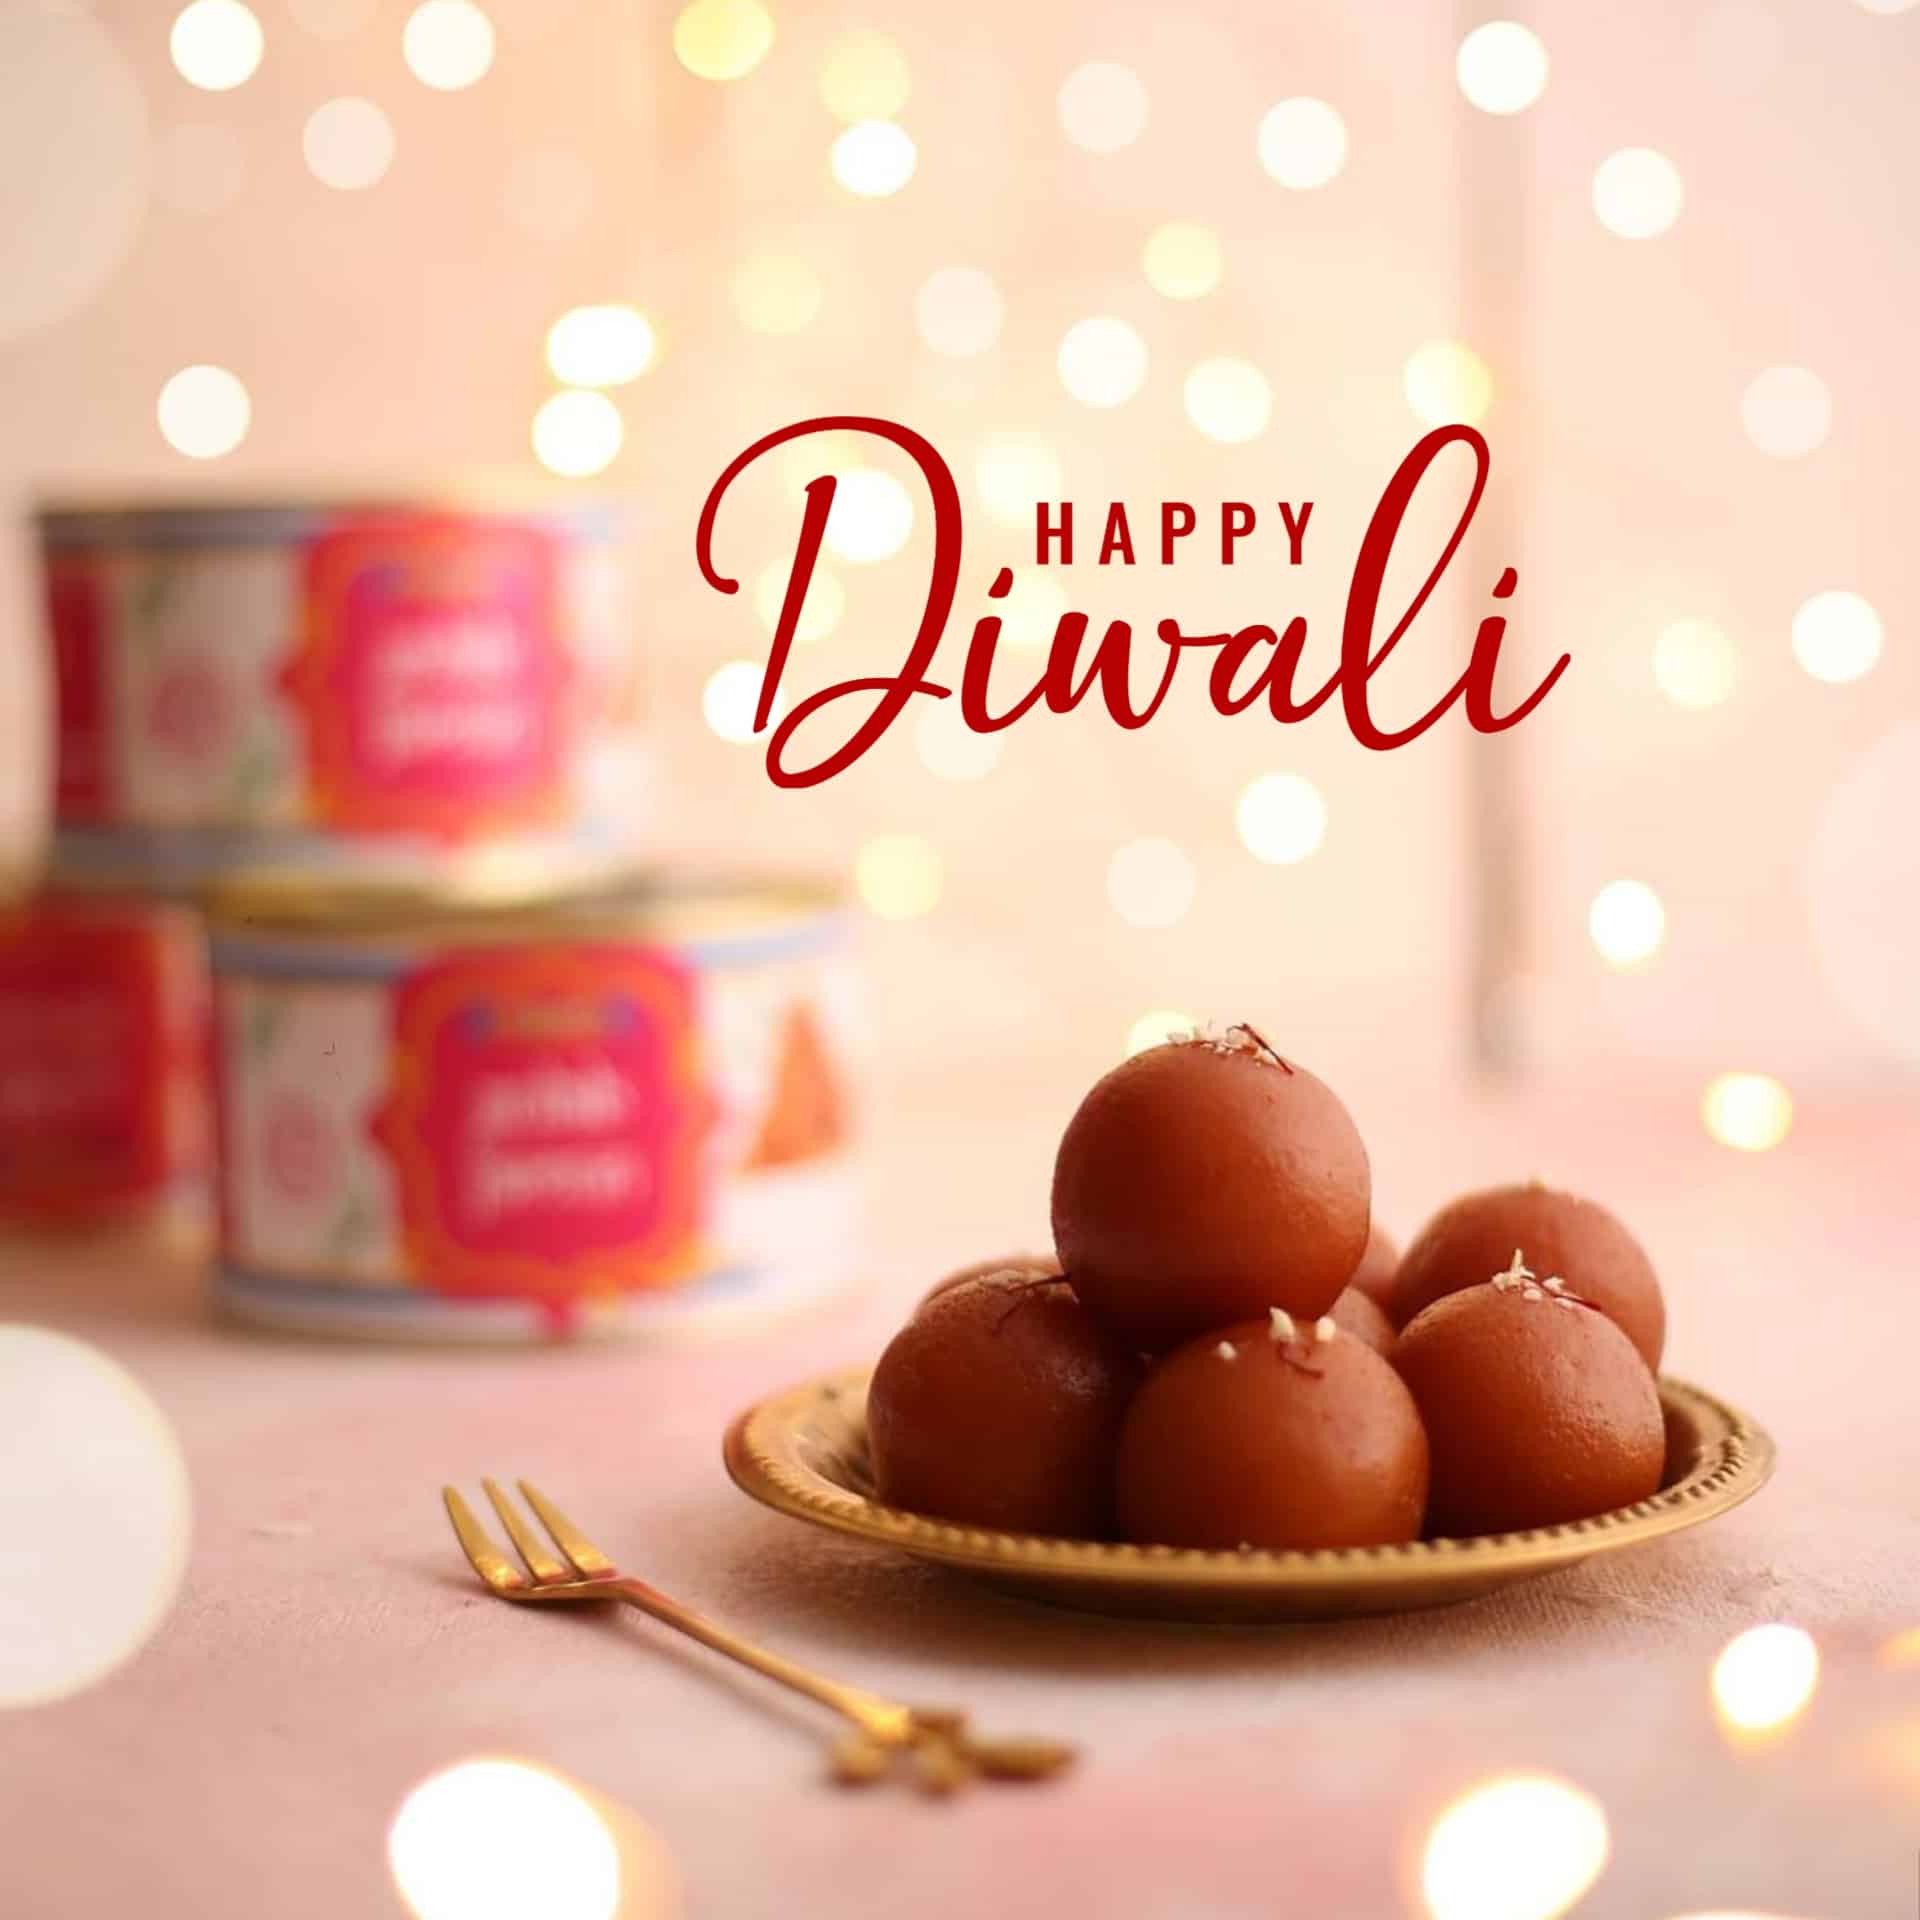 Best Happy Diwali Images